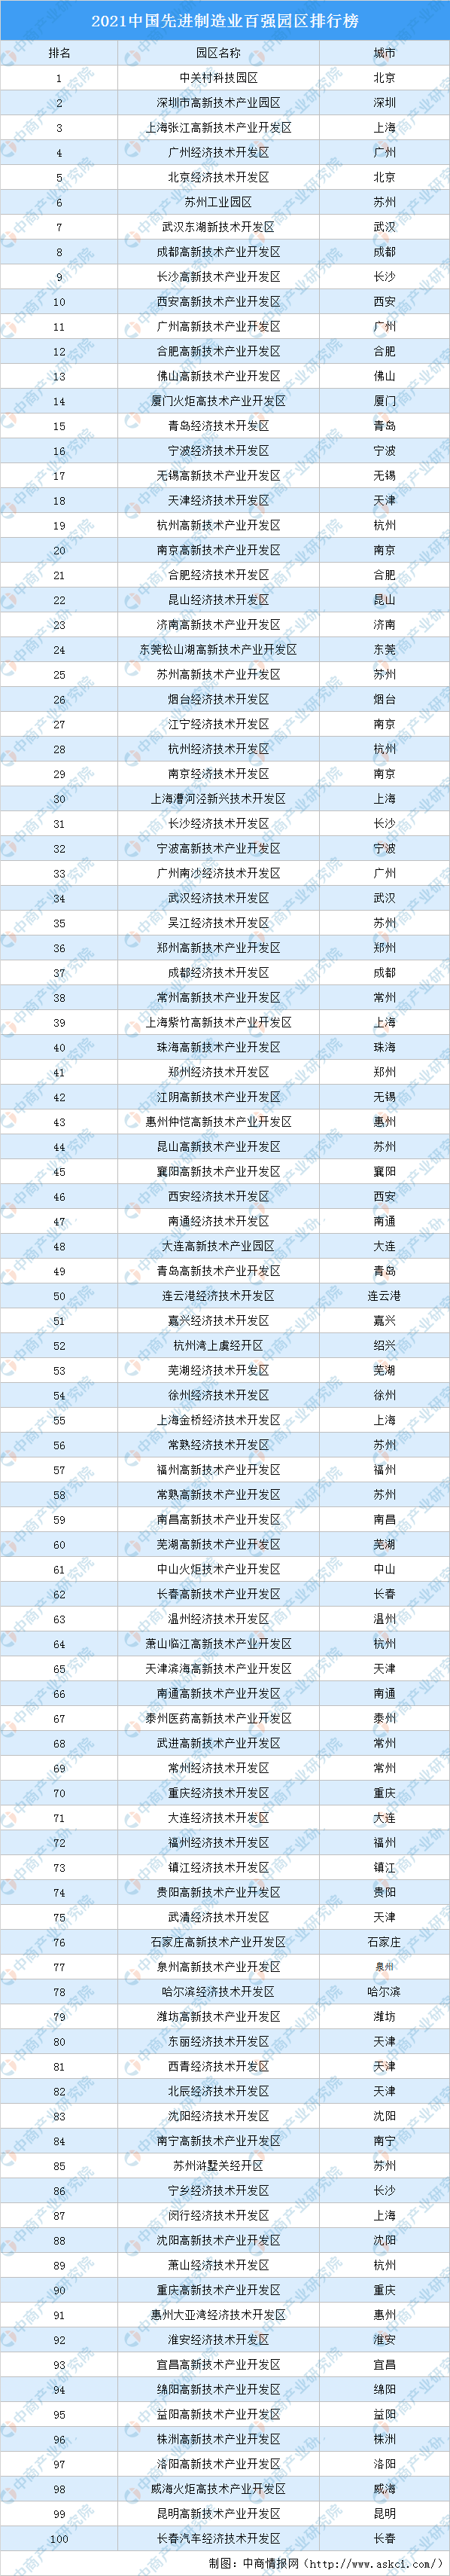 制造业排行榜_2020年河南民营企业制造业100强排行榜:1家上市企业位居榜单榜首